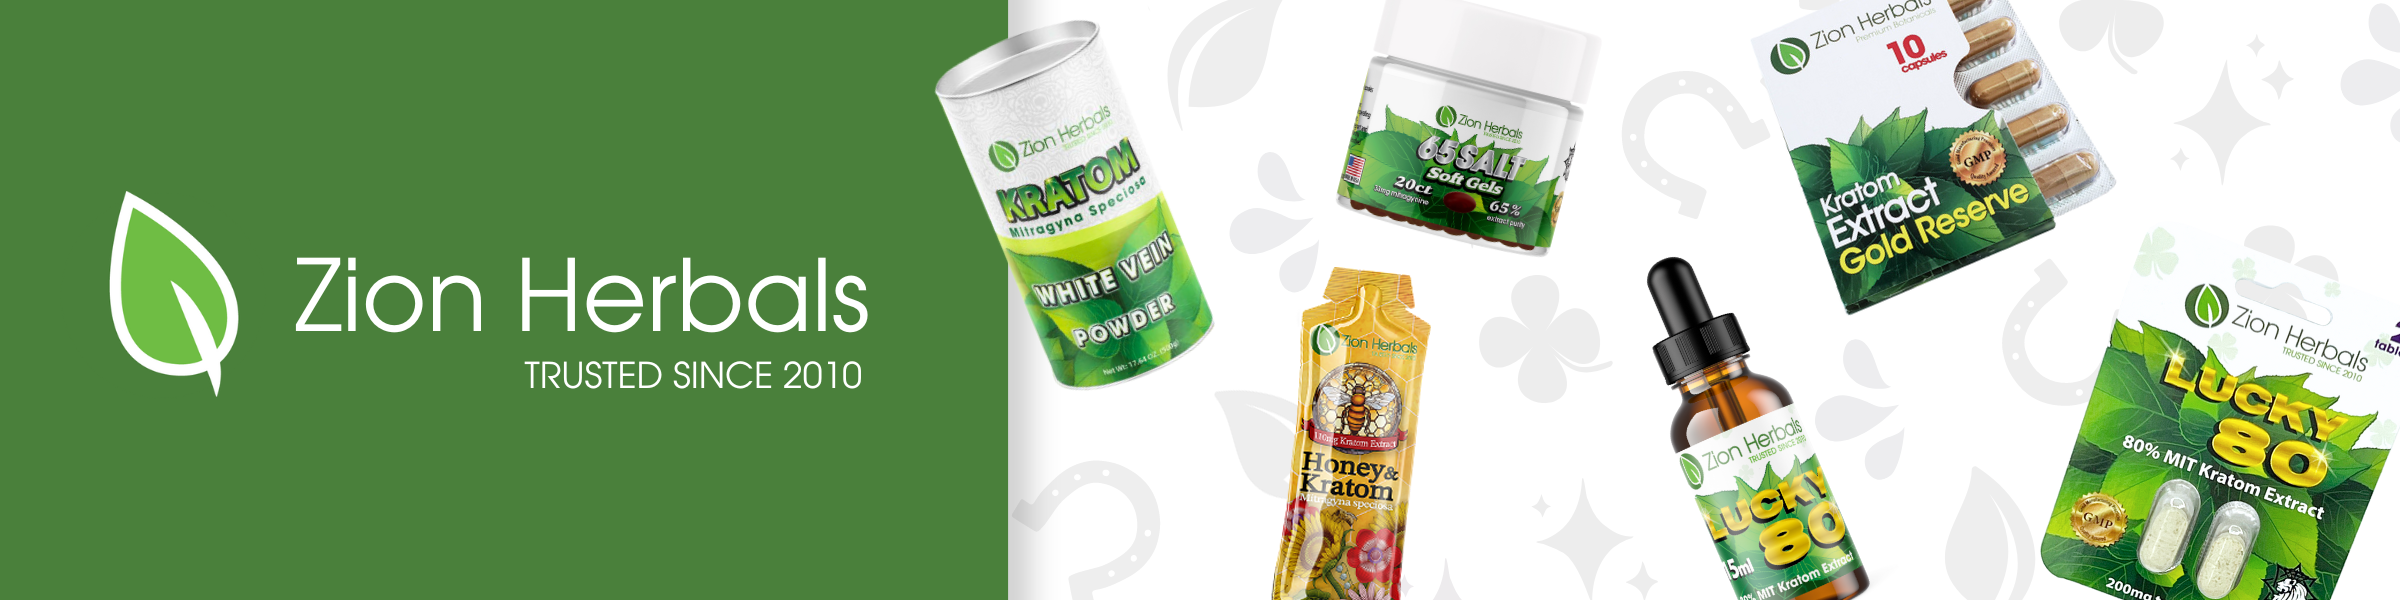 Zion Herbals brand Kratom products